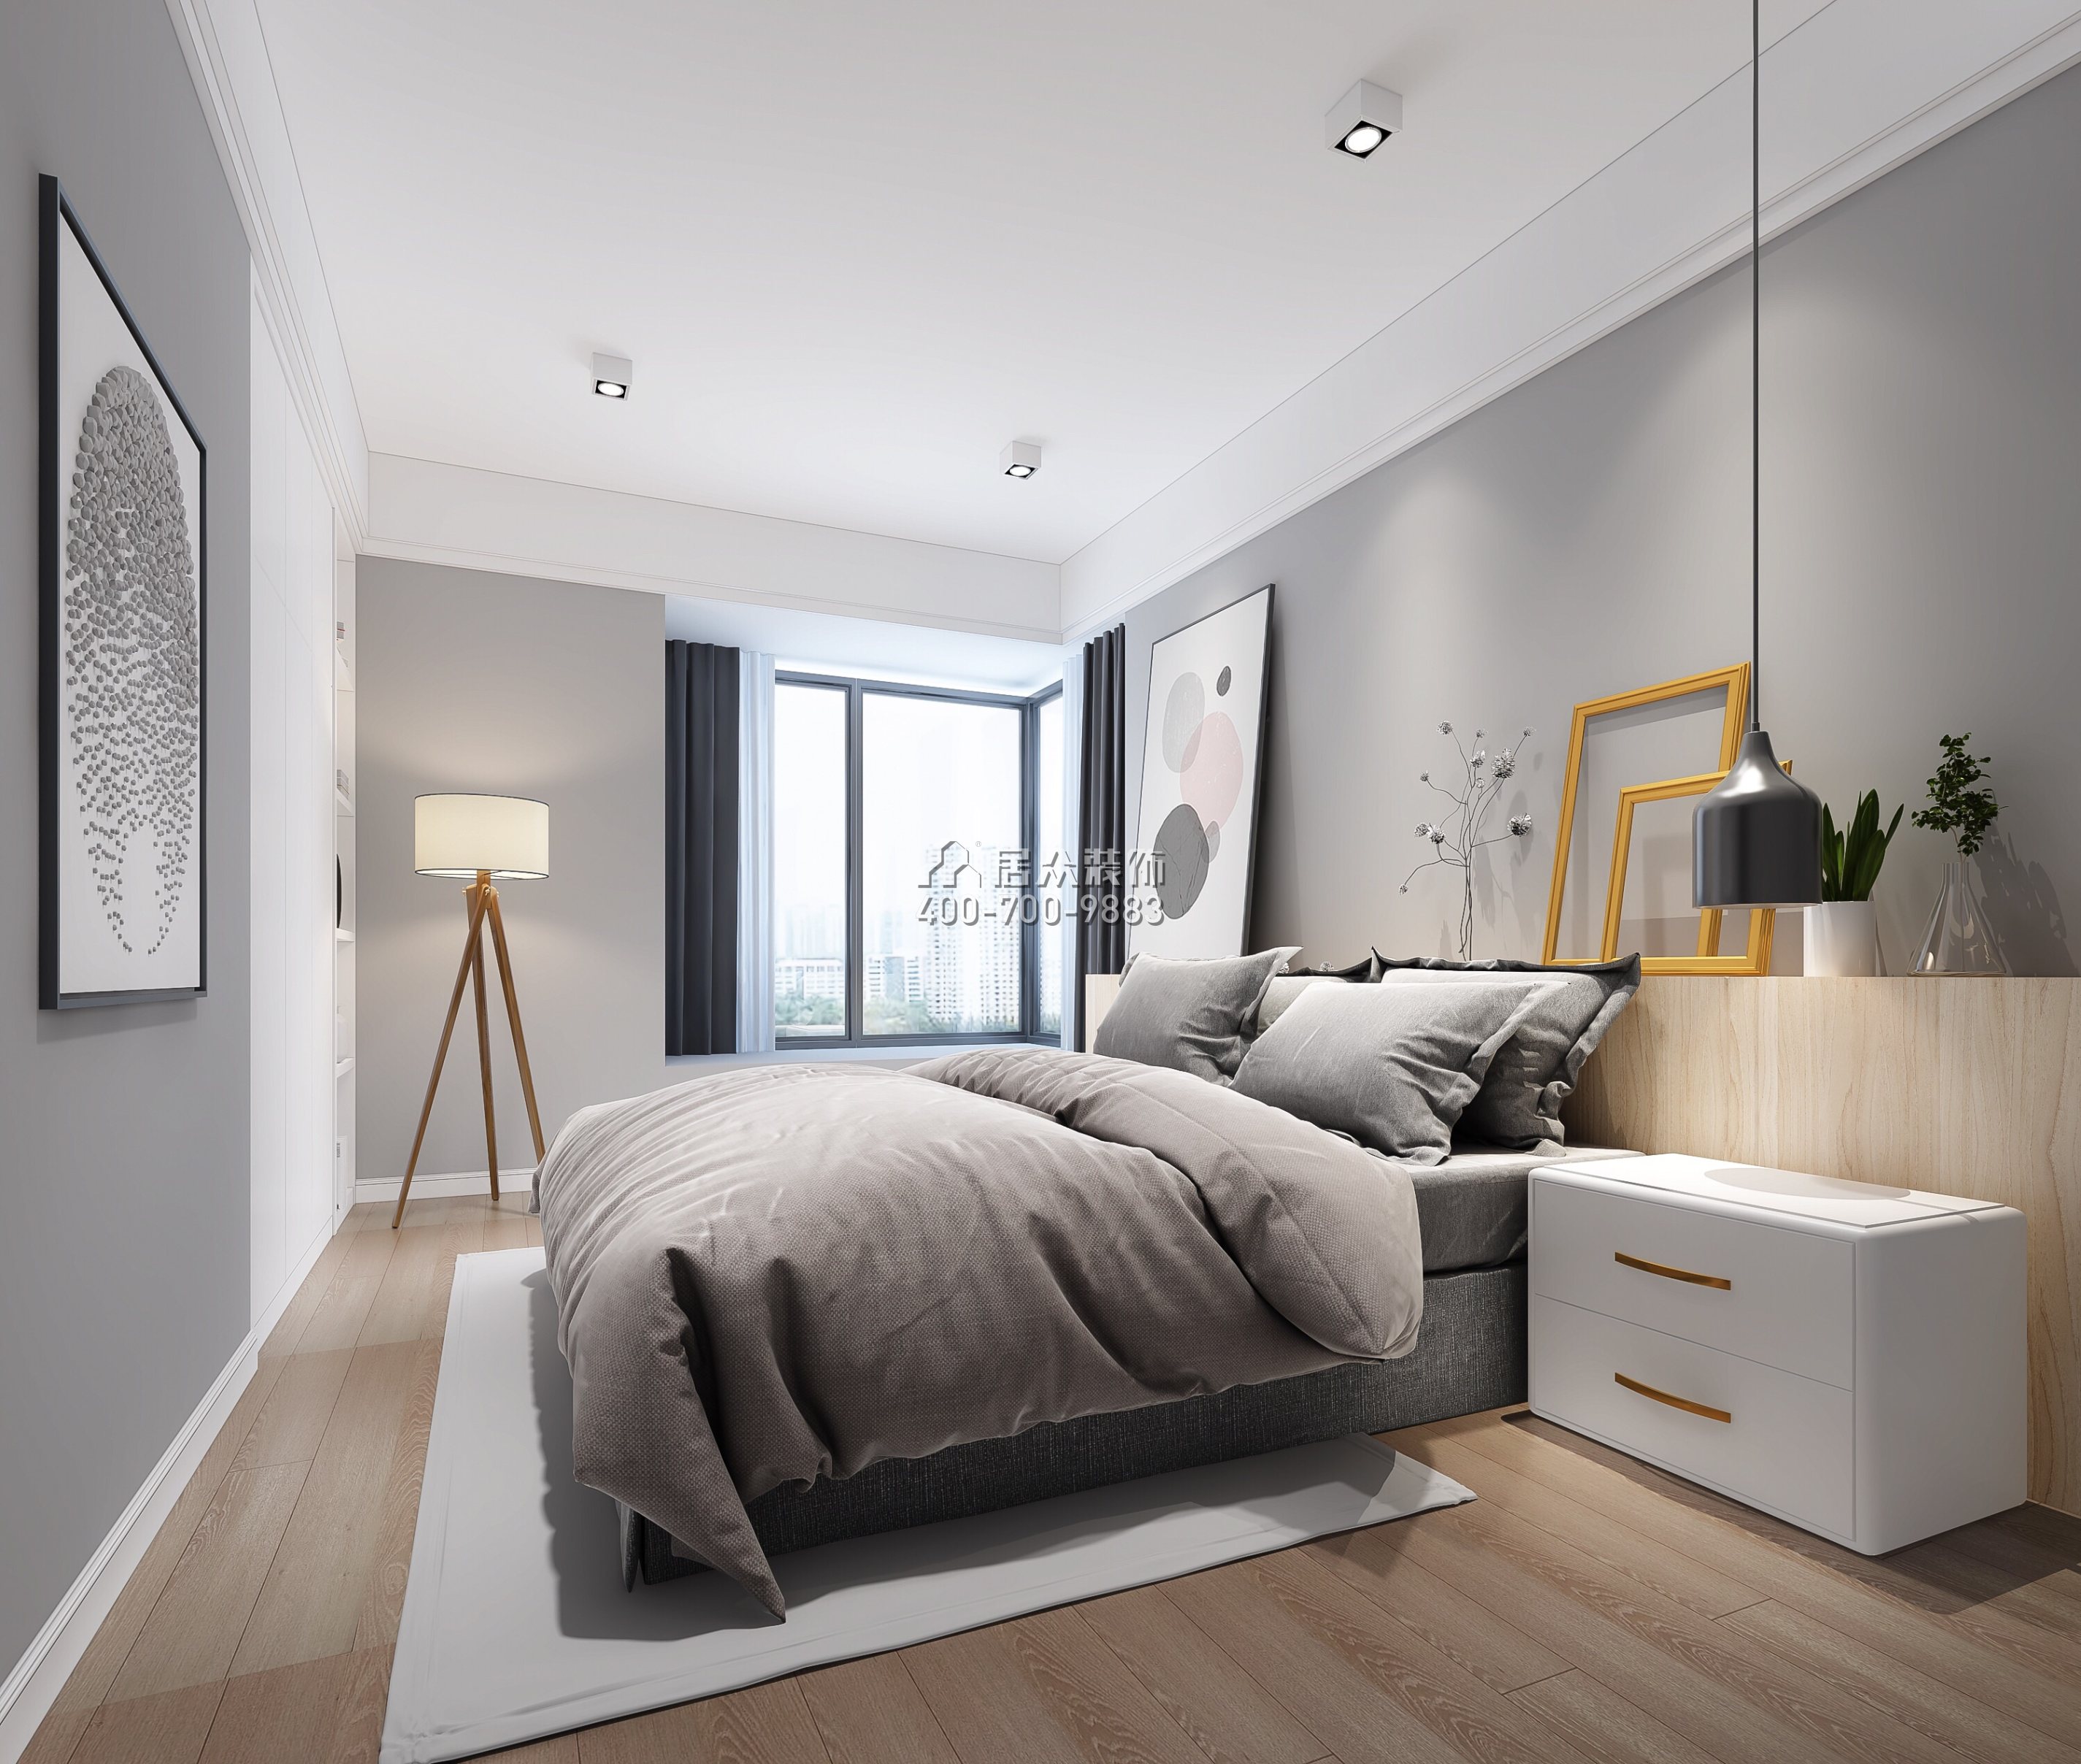 桃源村120平方米北欧风格平层户型卧室装修效果图